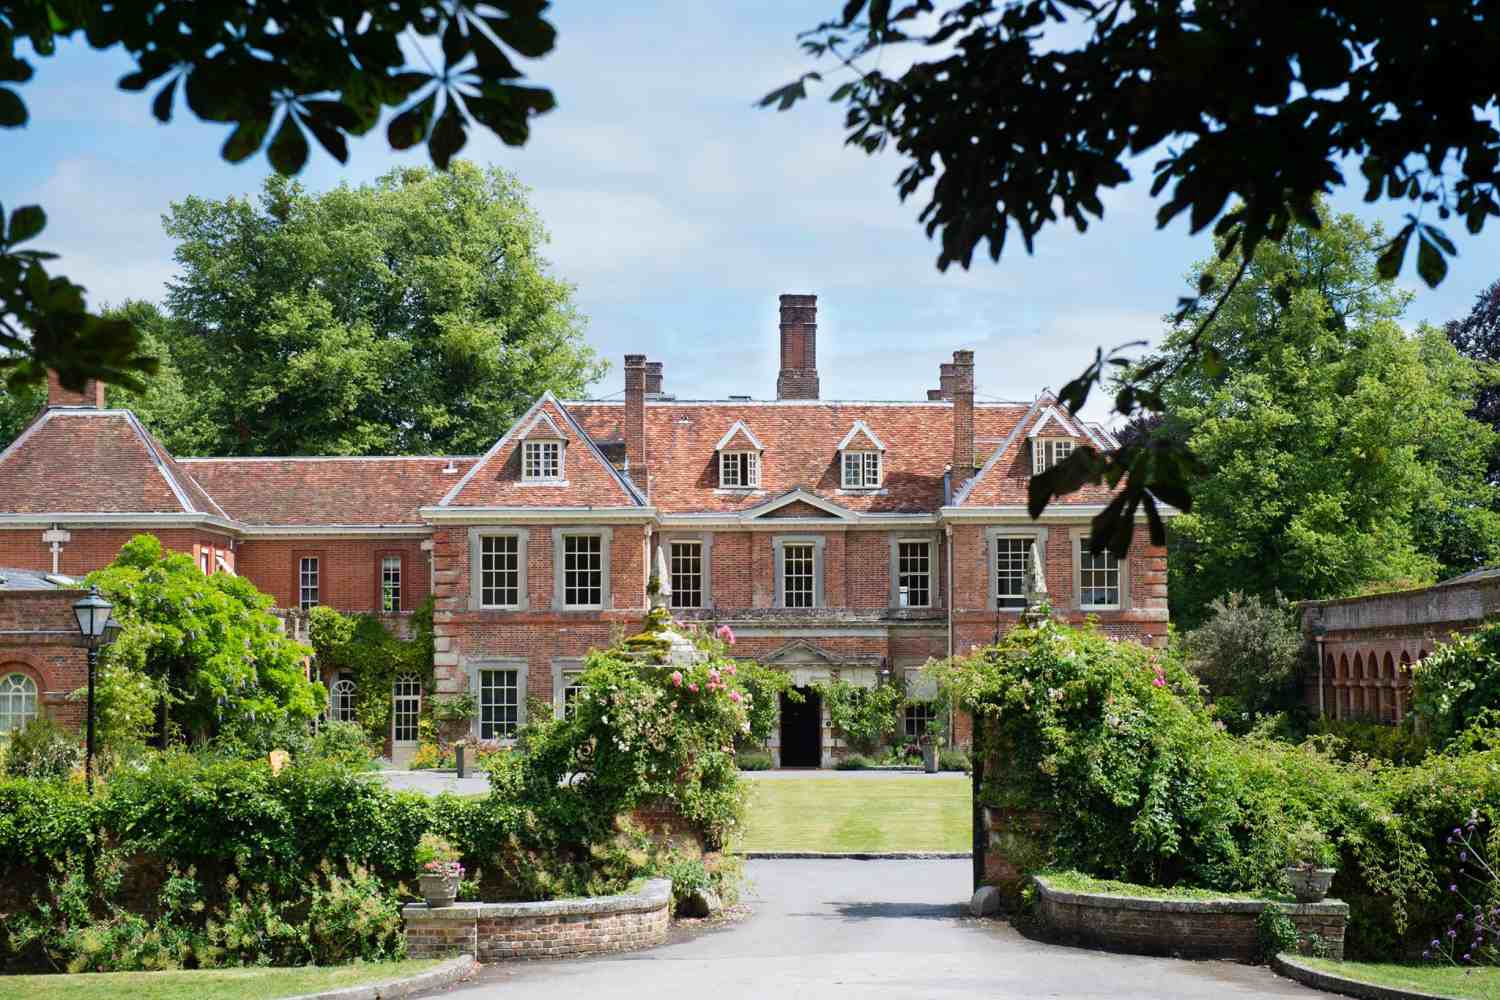 Lainston House Winchester, Hampshire - England